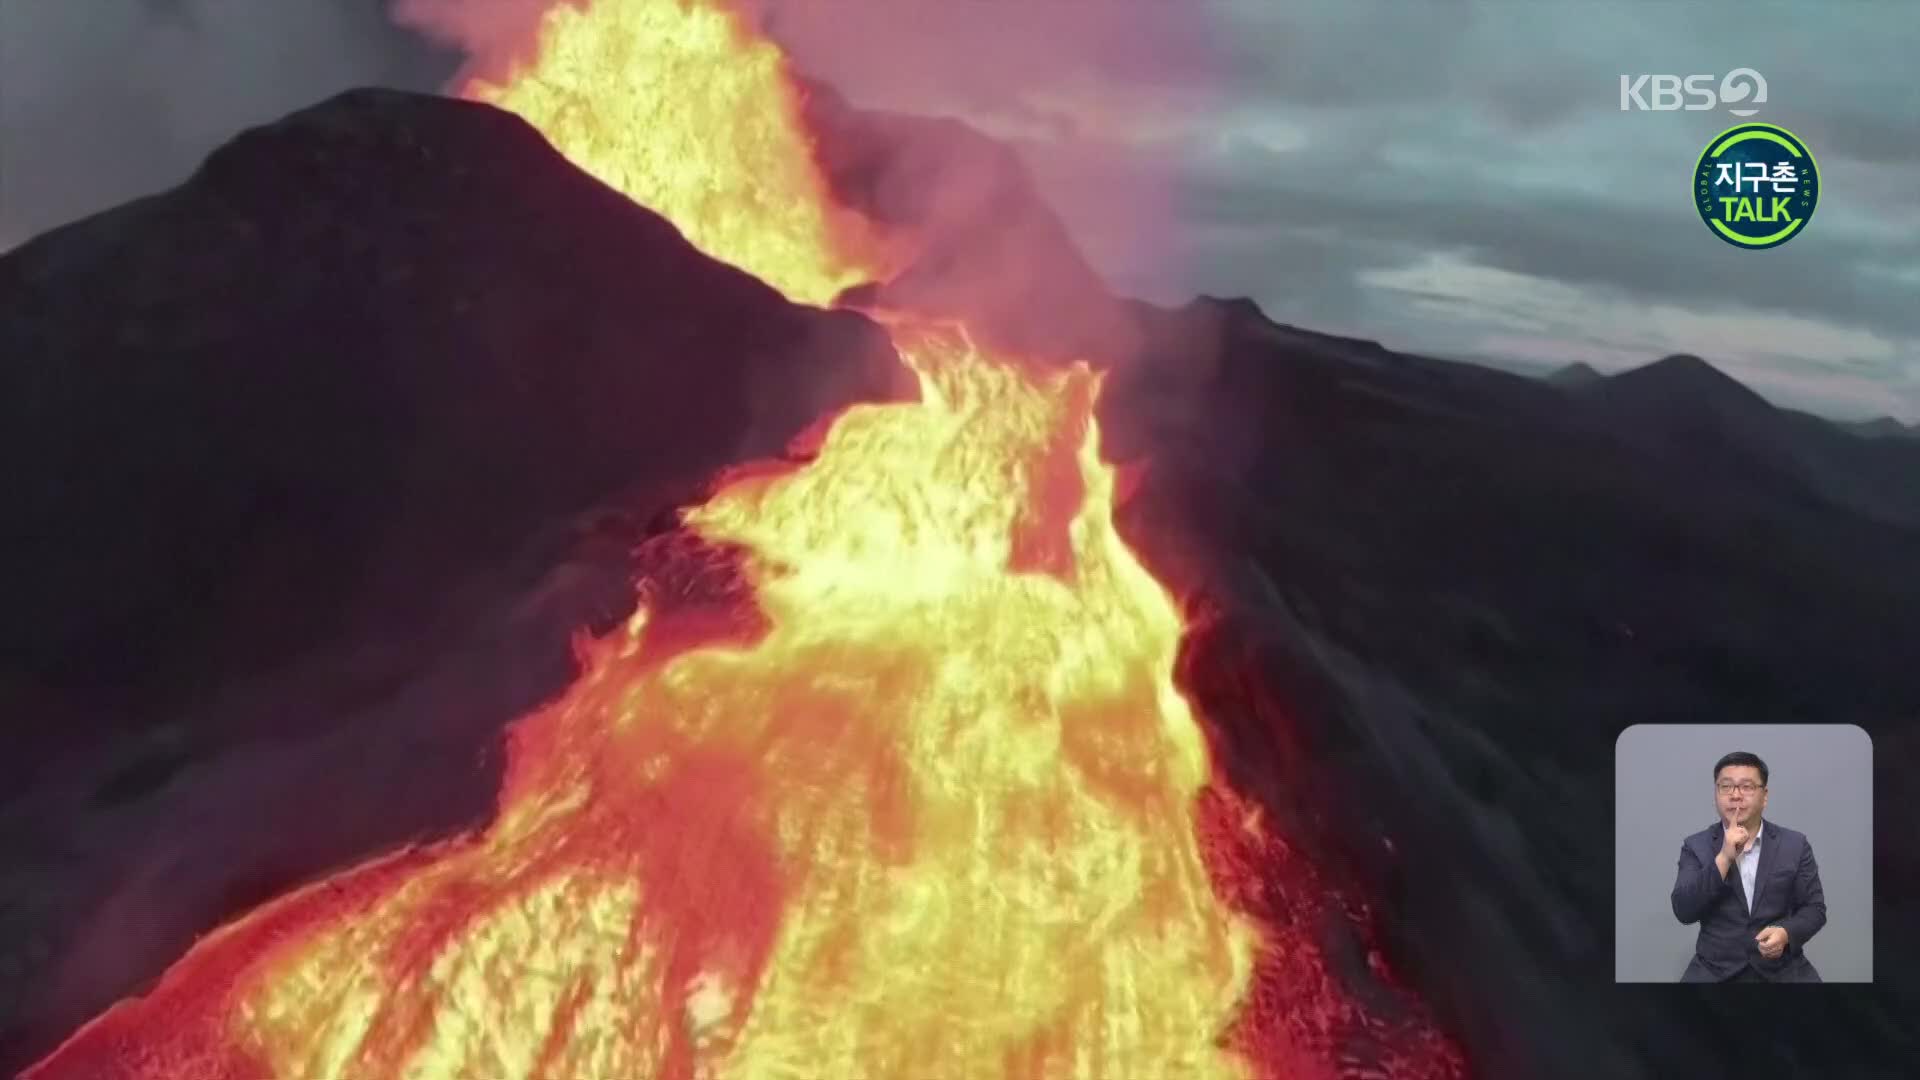 [지구촌 Talk] 아이슬란드 화산 촬영하던 드론의 최후